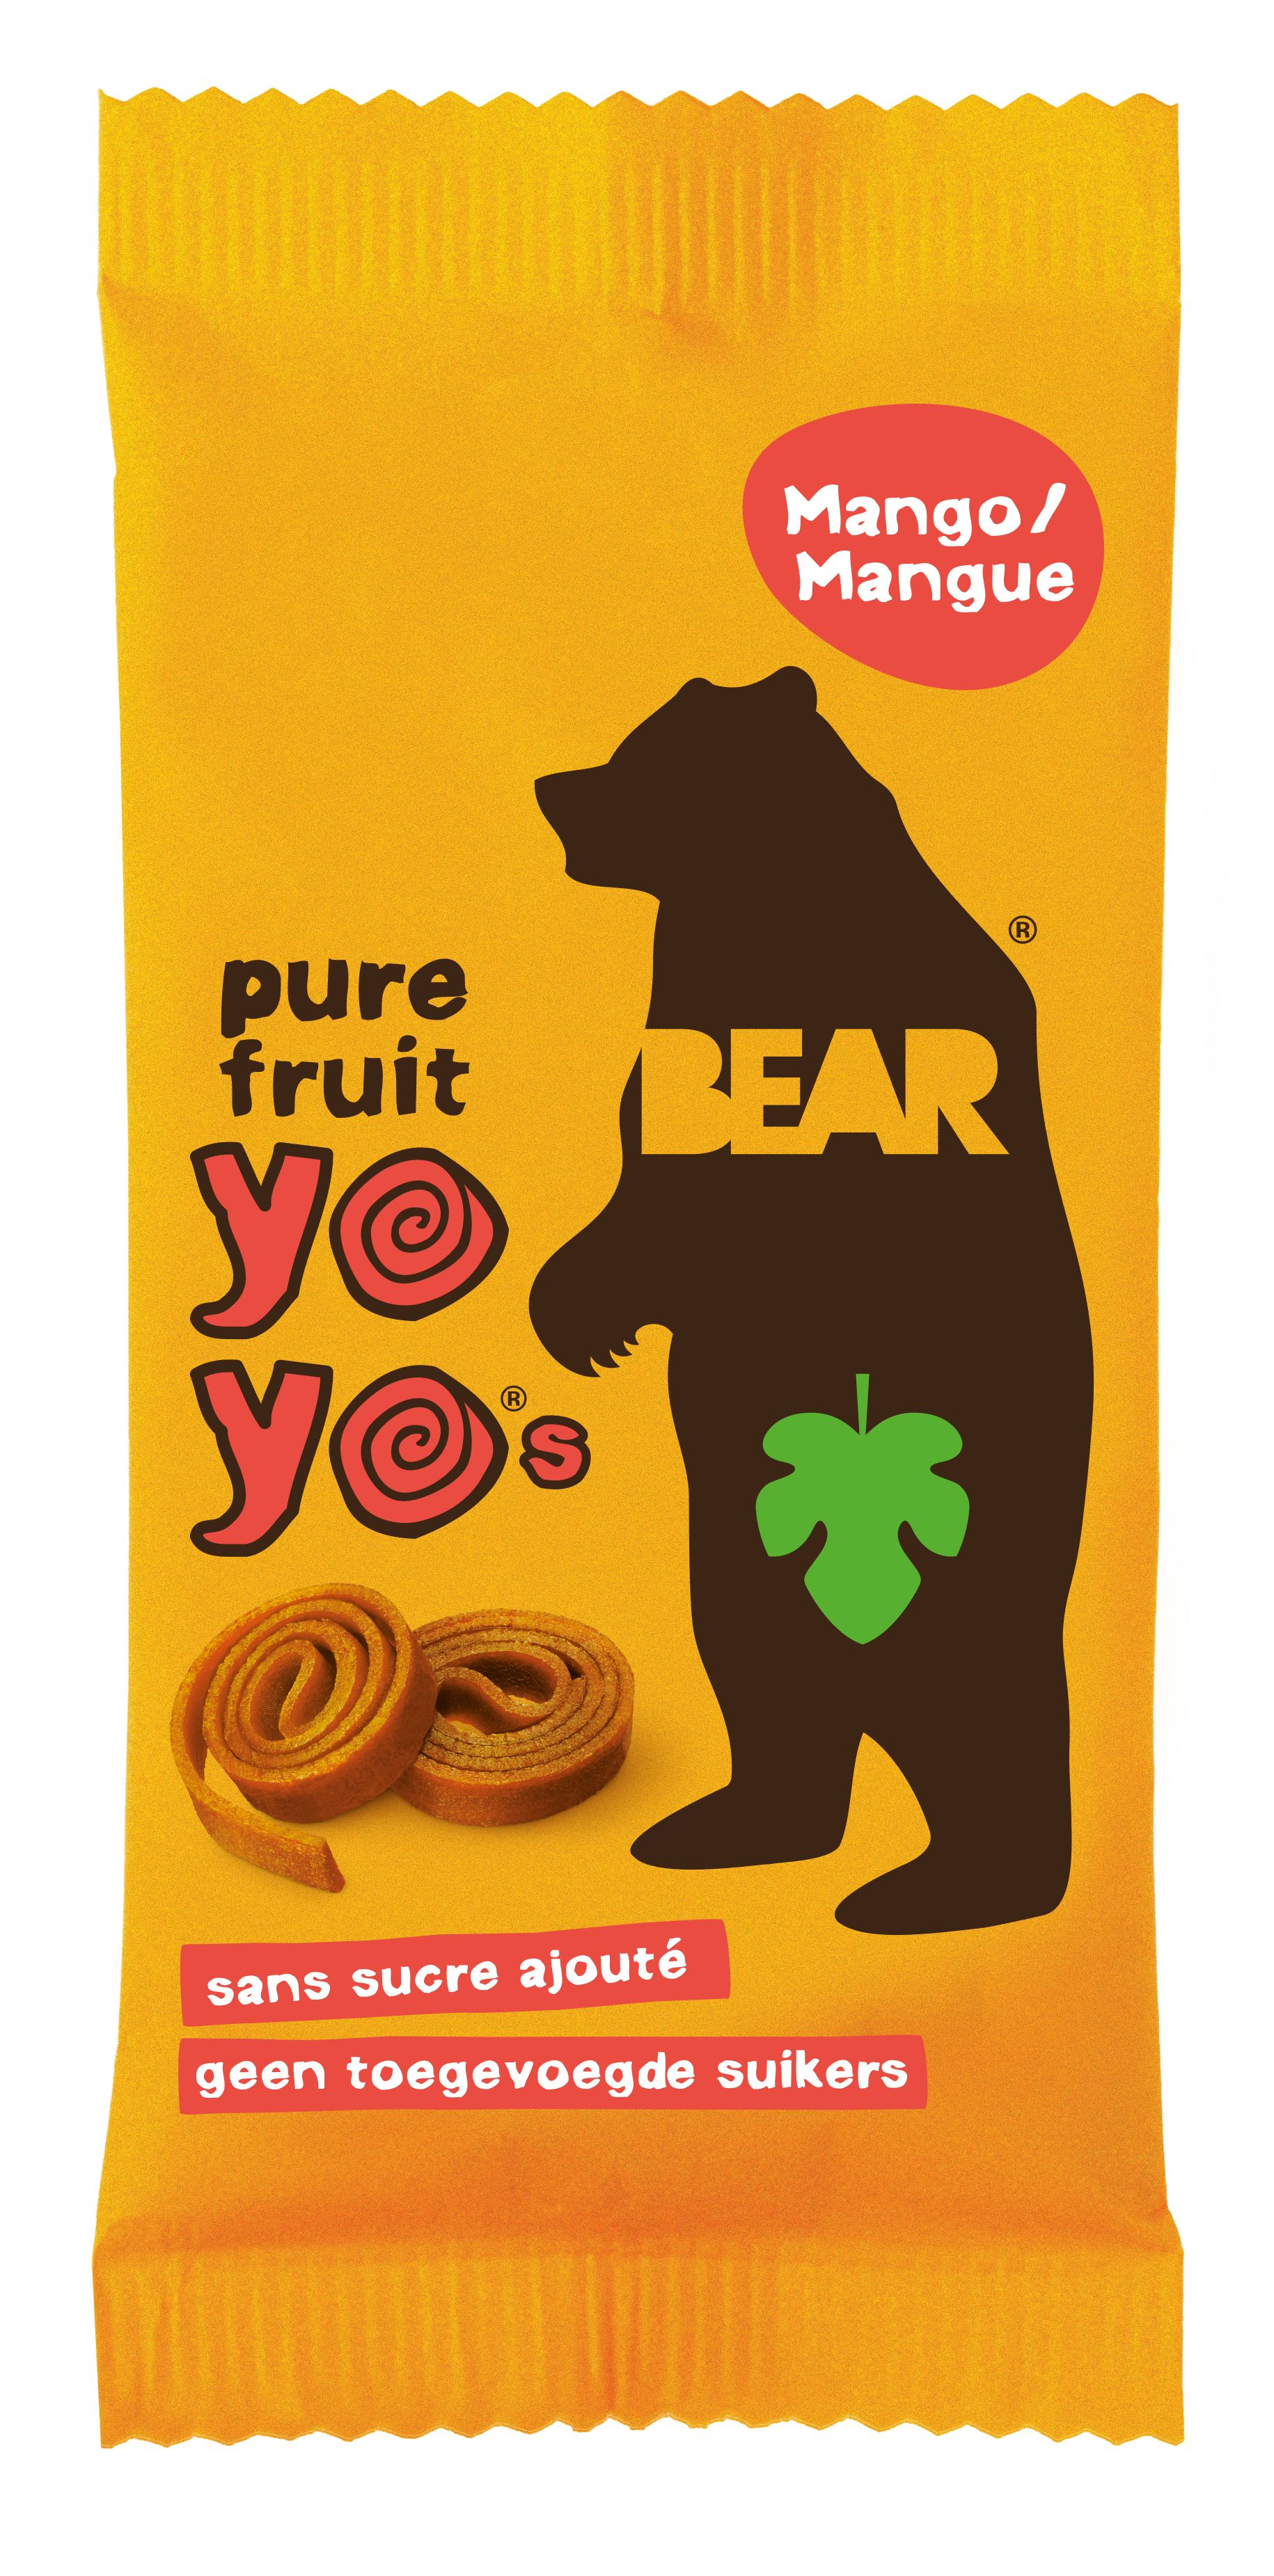 BEAR Yo Yo mango pečené ovocné plátky 20 g BEAR